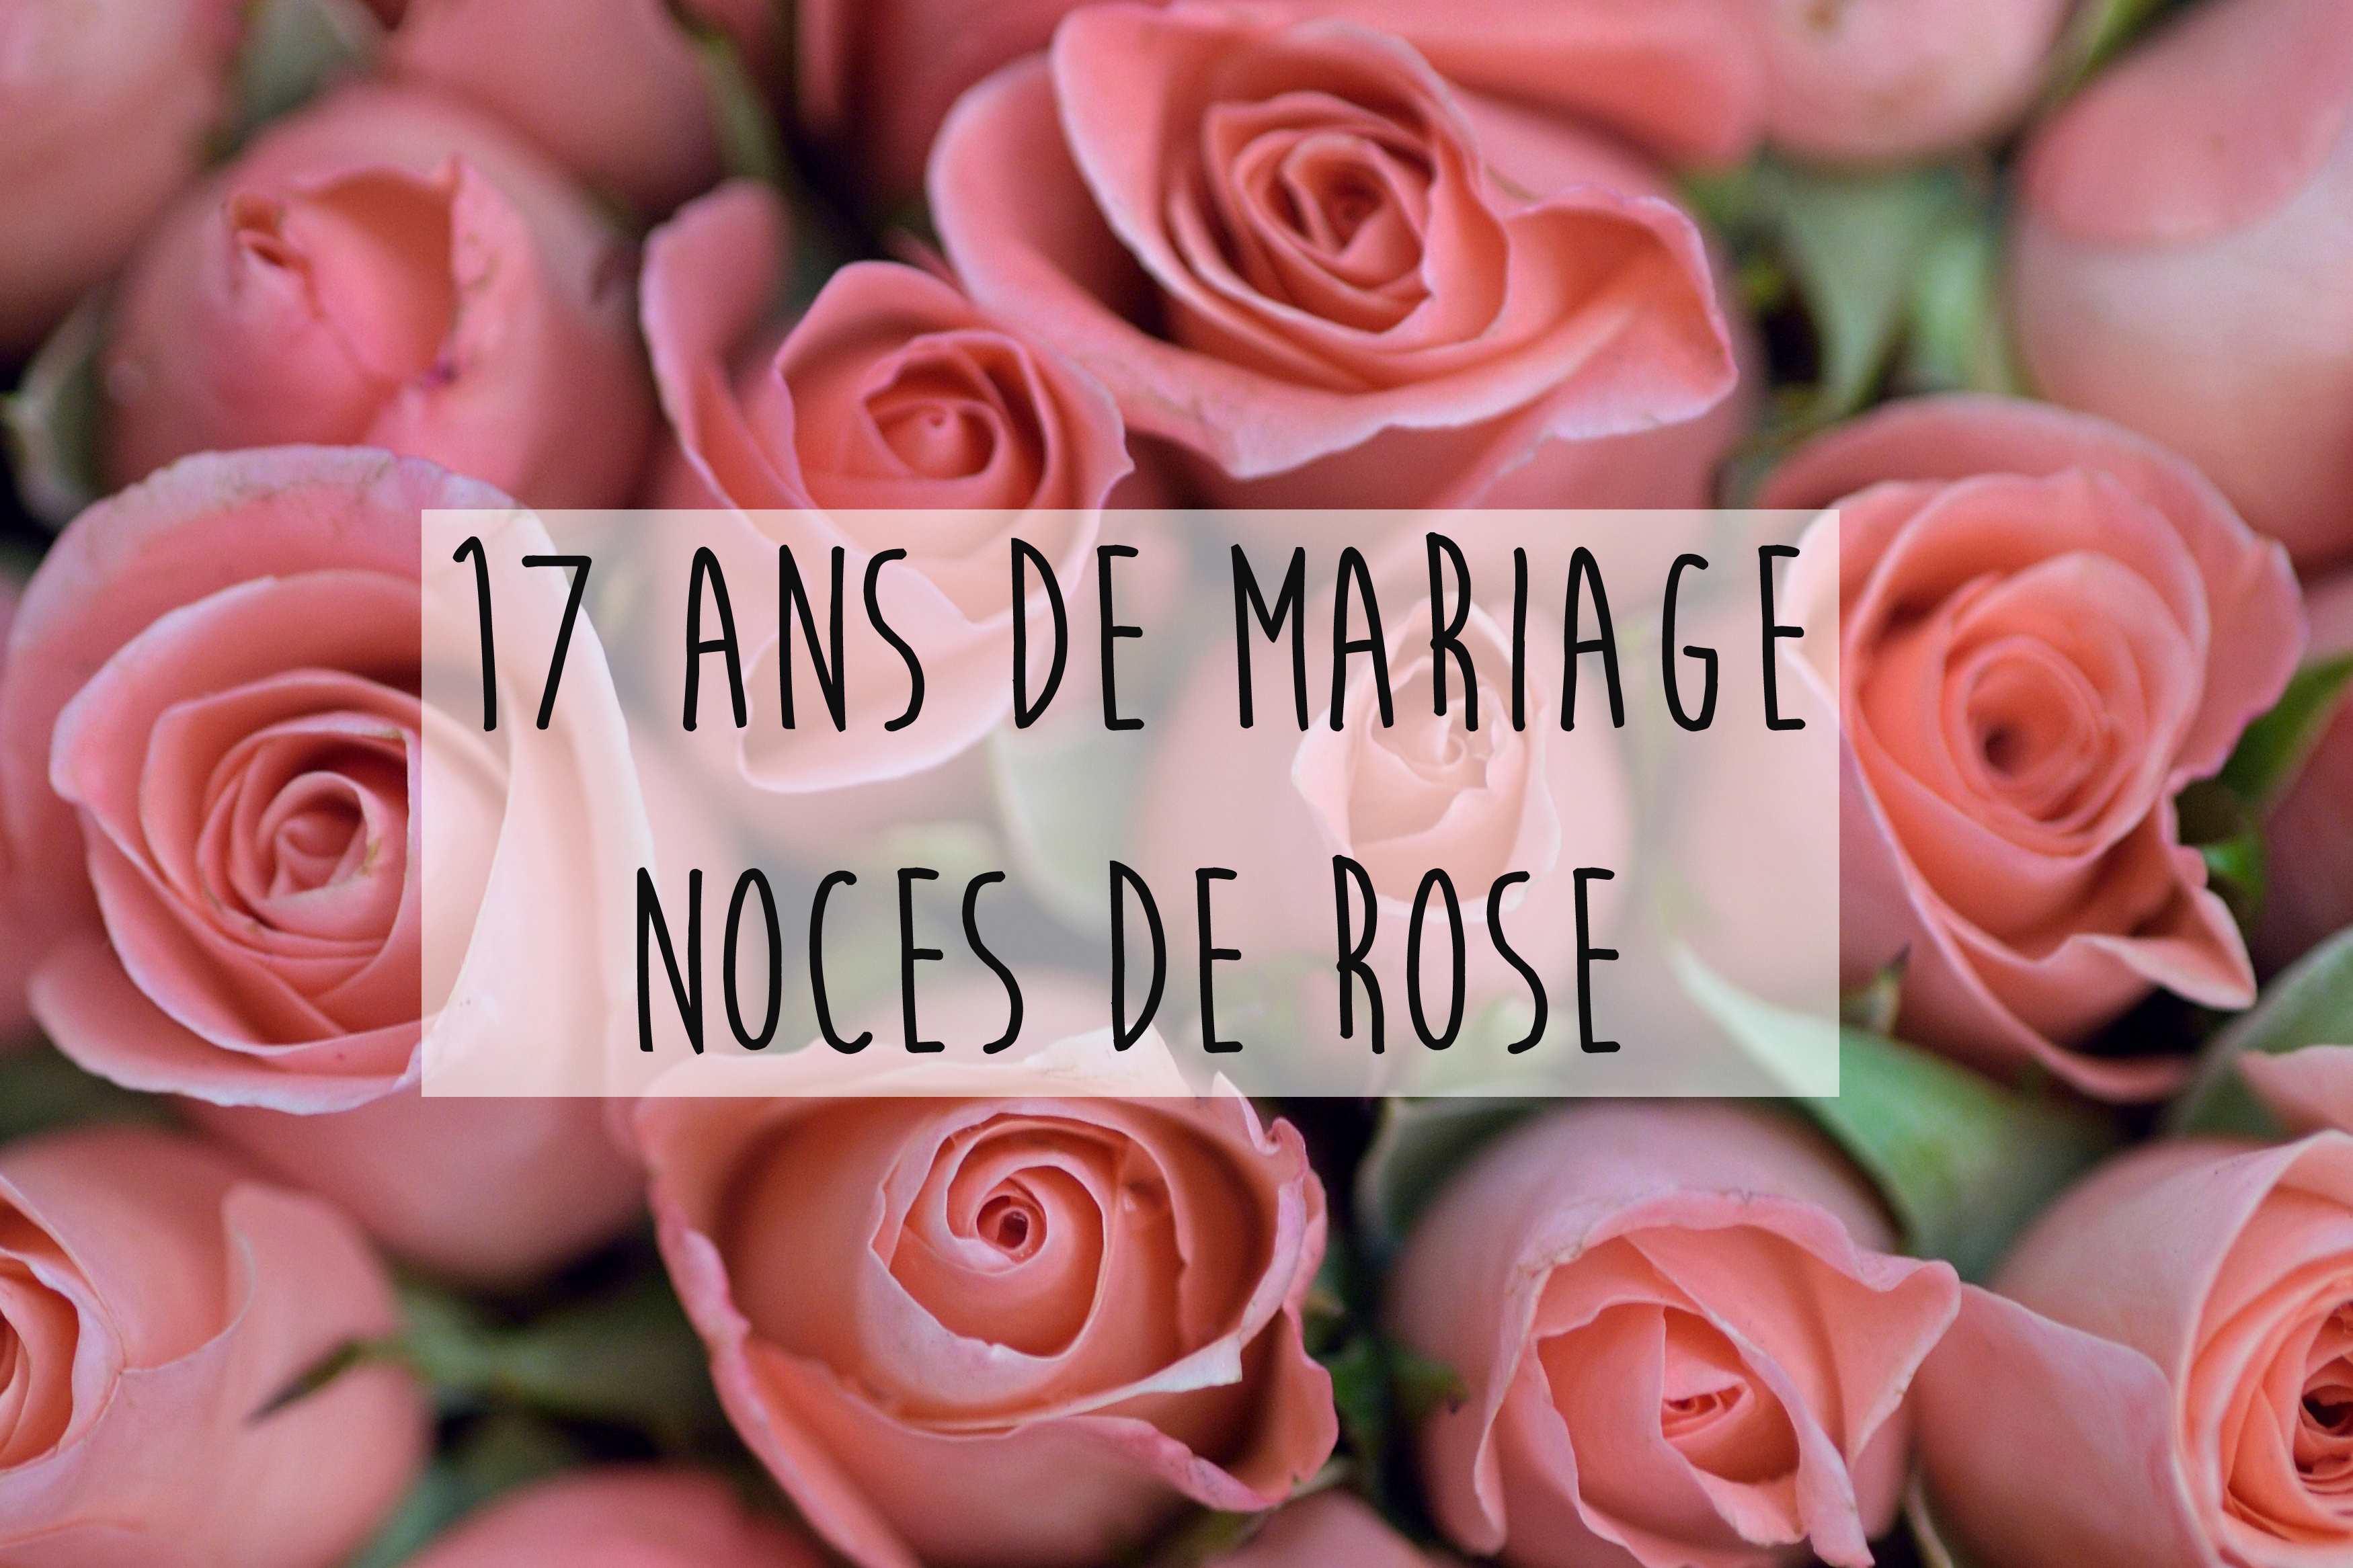 5 Ans De Mariage Les Noces De Bois